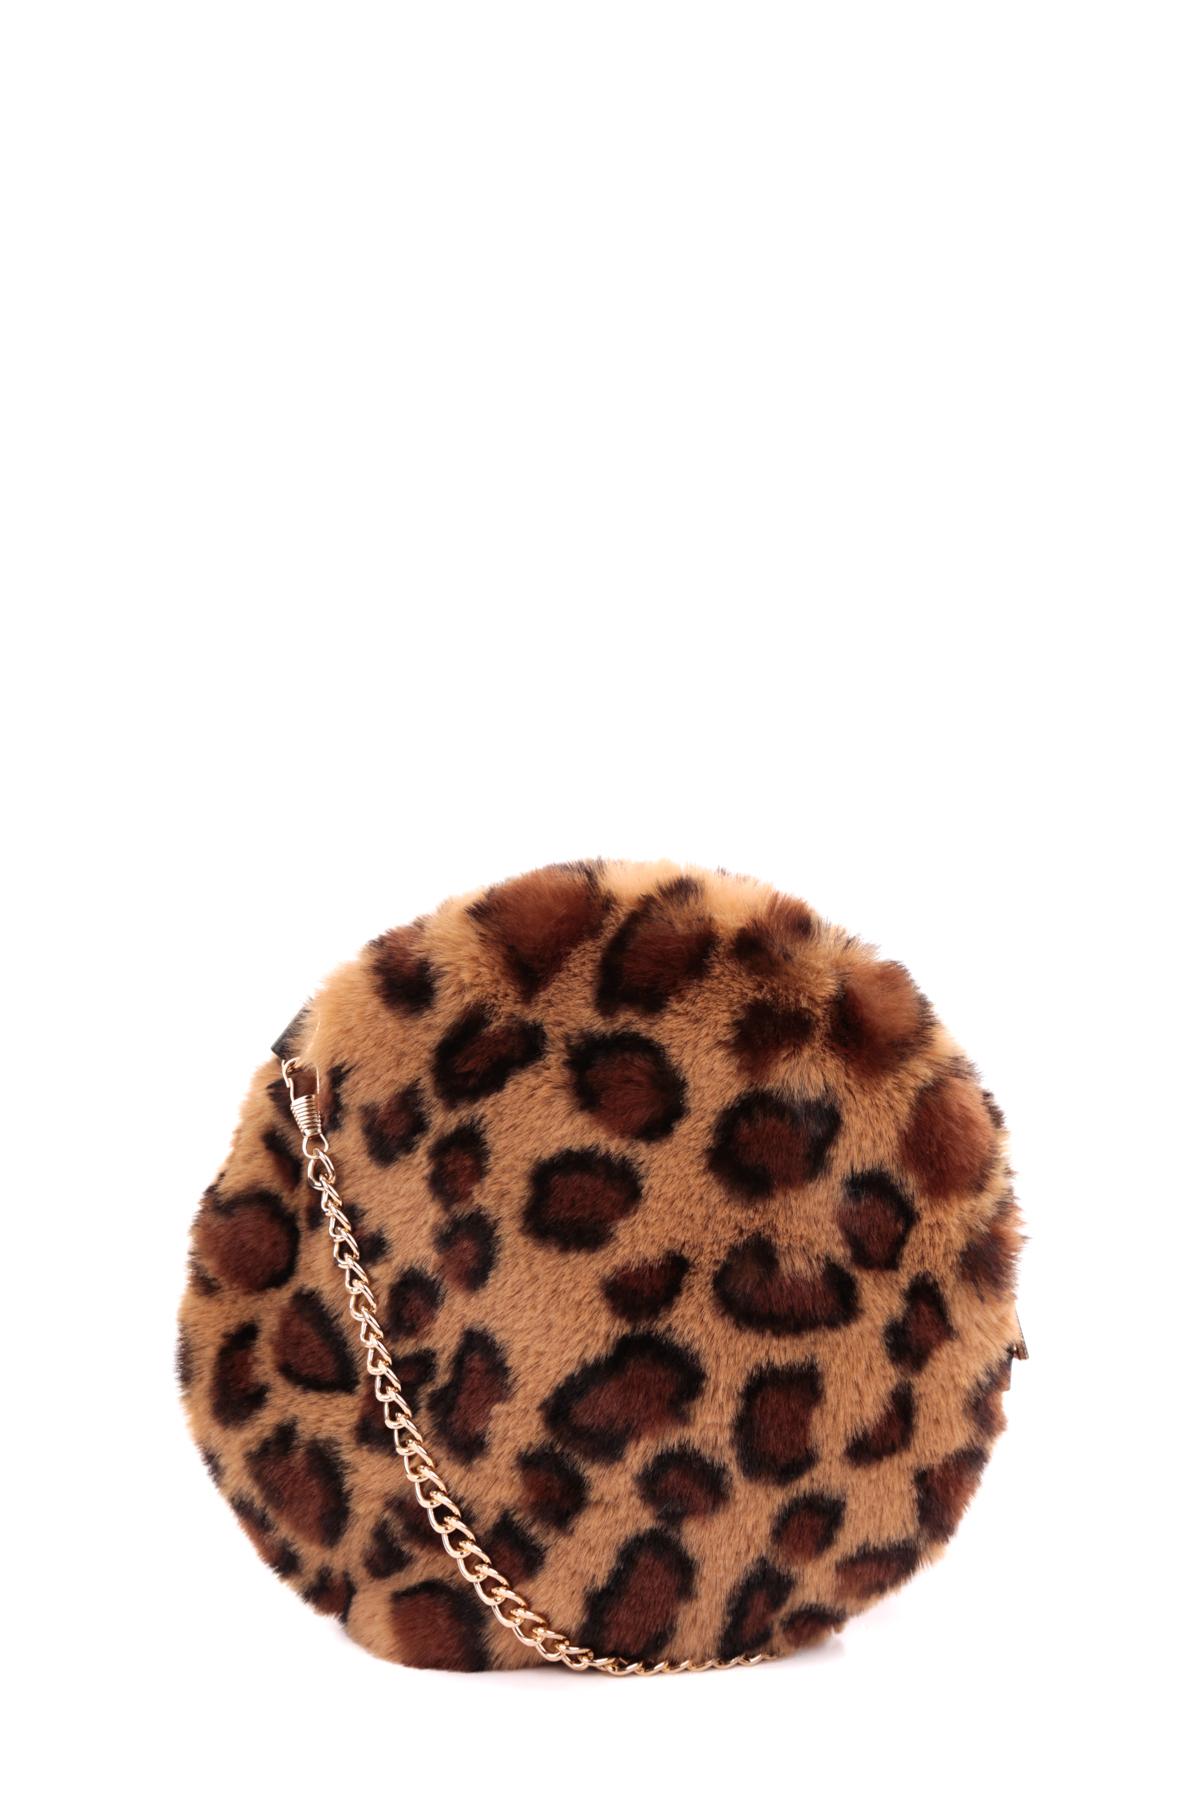 A tracolla Borse Brown leopard Rouge Bonbons SA180155 #c Efashion Paris